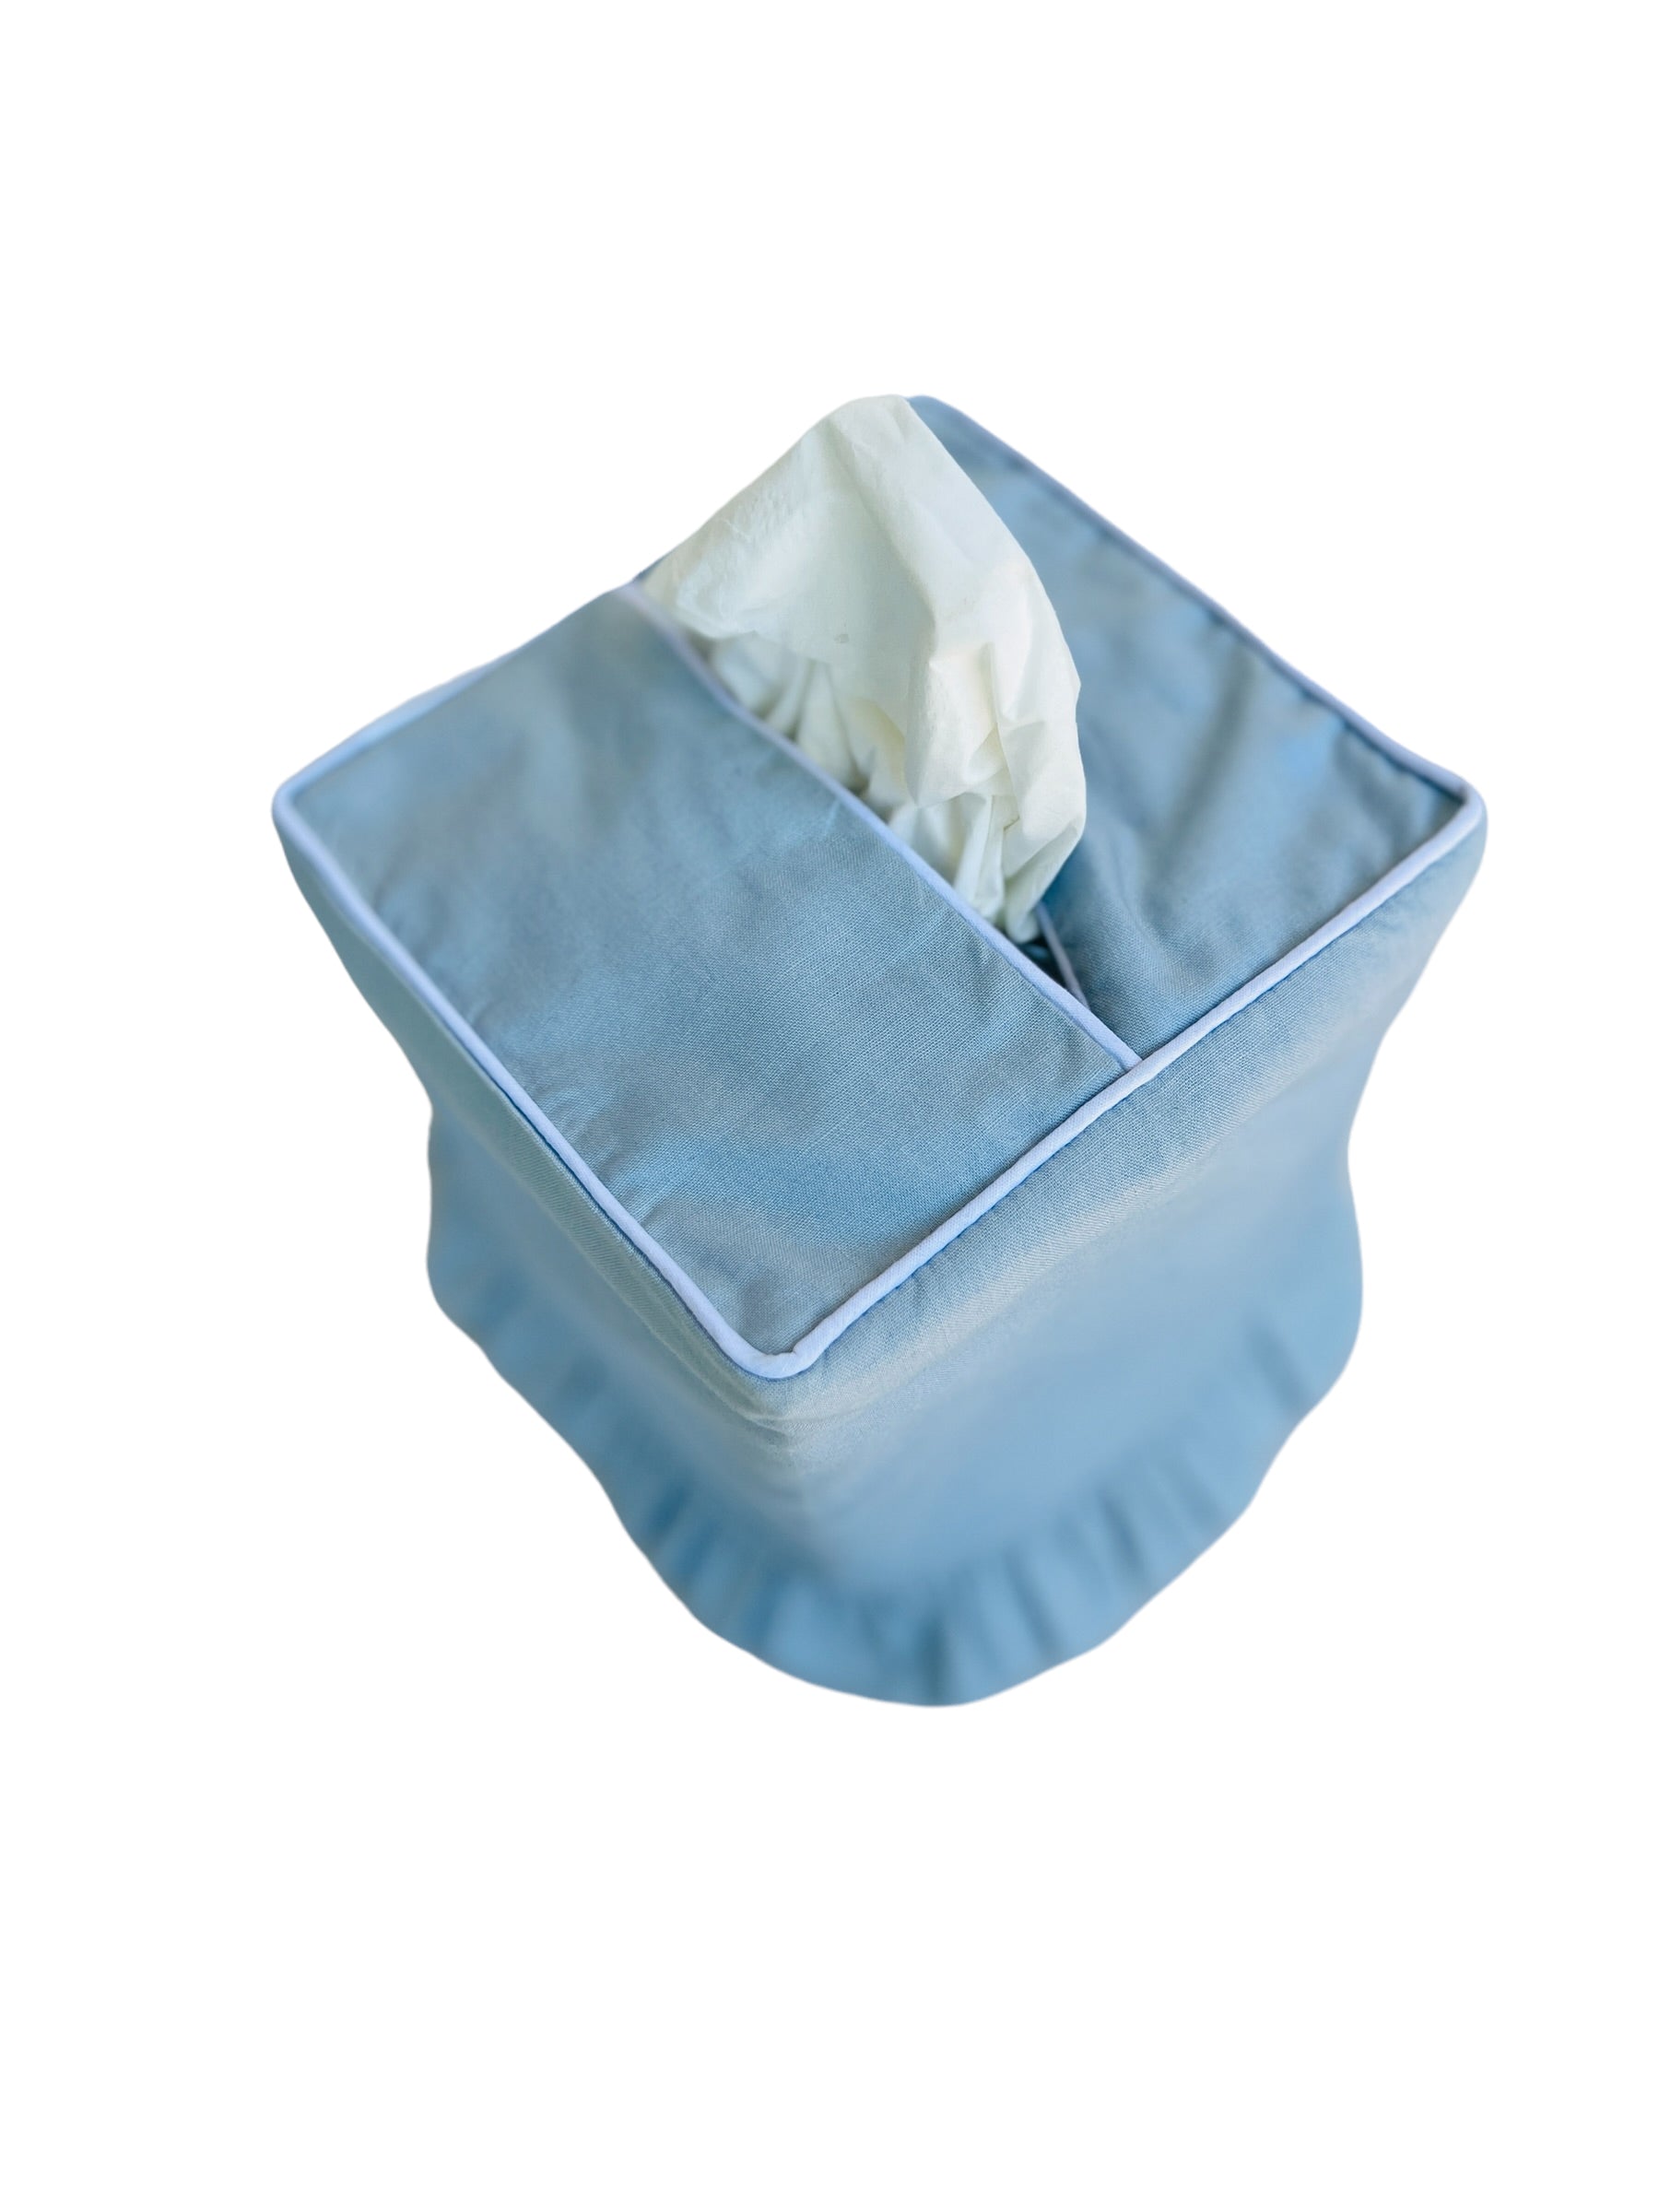 Light blue ruffle tissue cover, custom monogram available